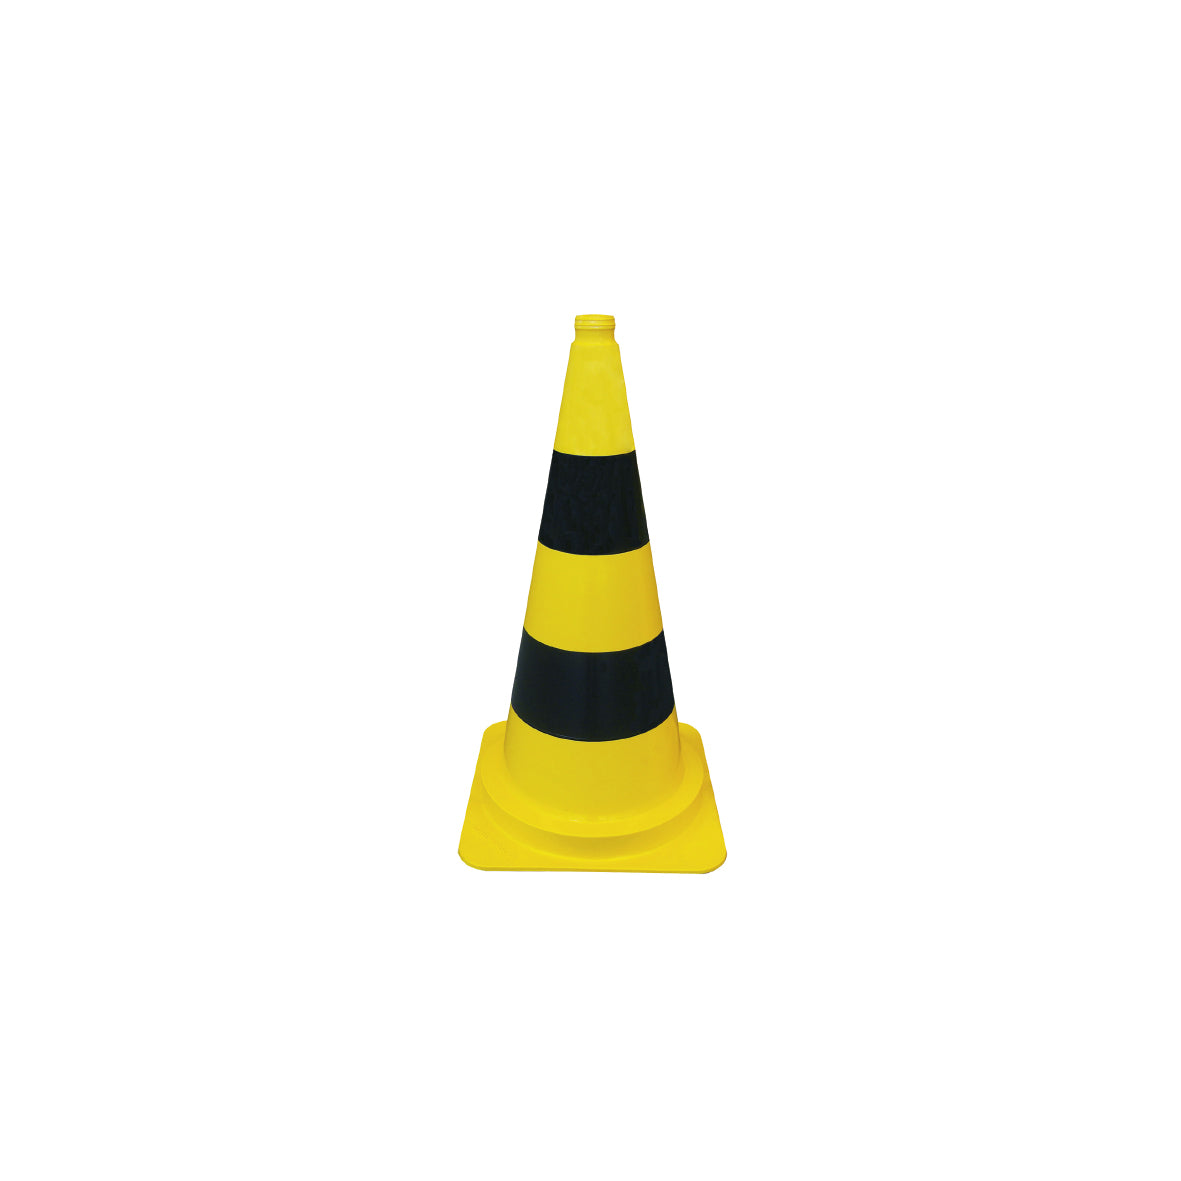 Verkehrsleitkegel gelb-schwarz, leicht, 2 Streifen, h = 75 cm, g = 3.0 kg